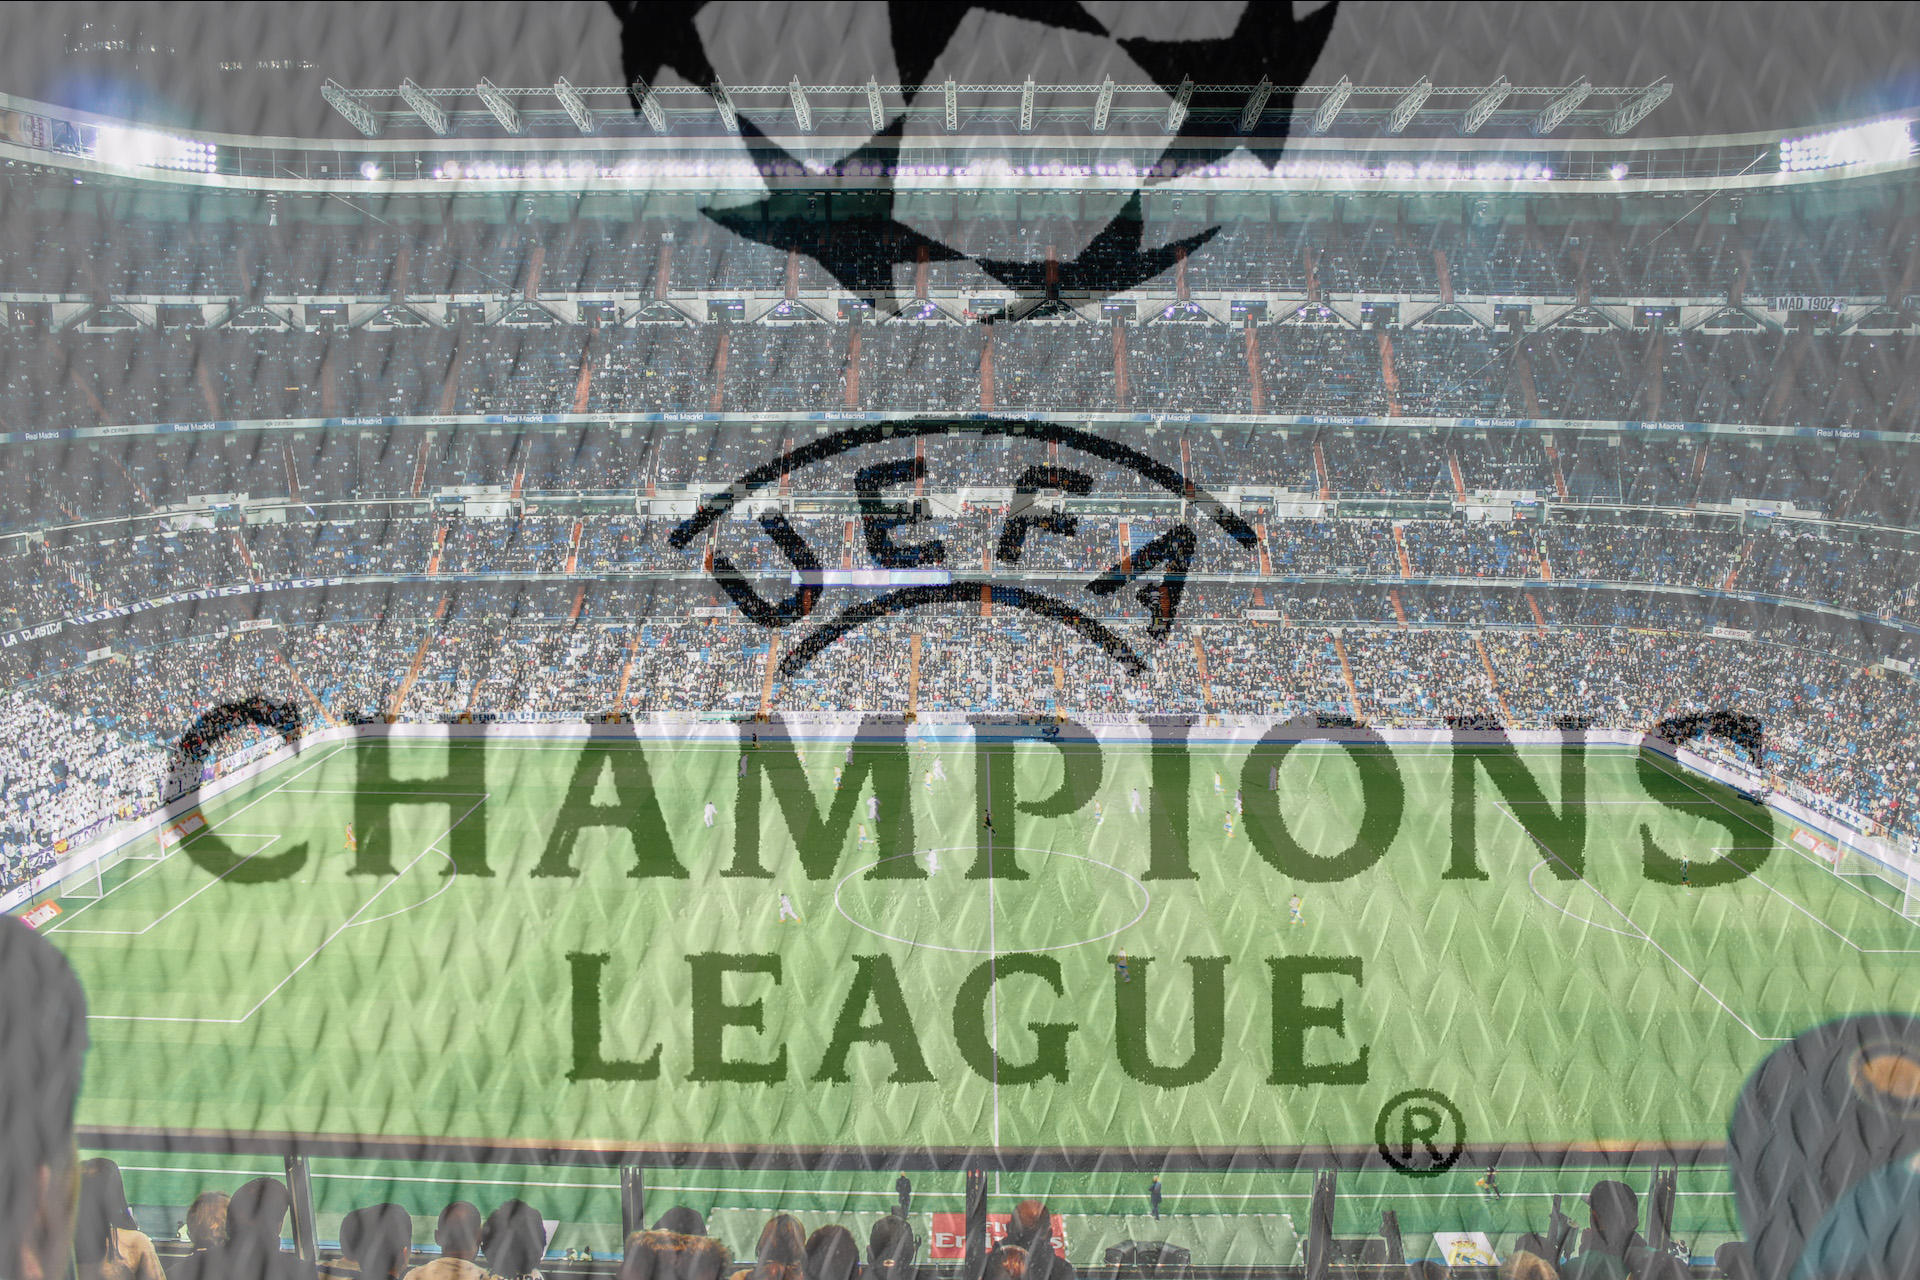 Champions League, fotbollsarena